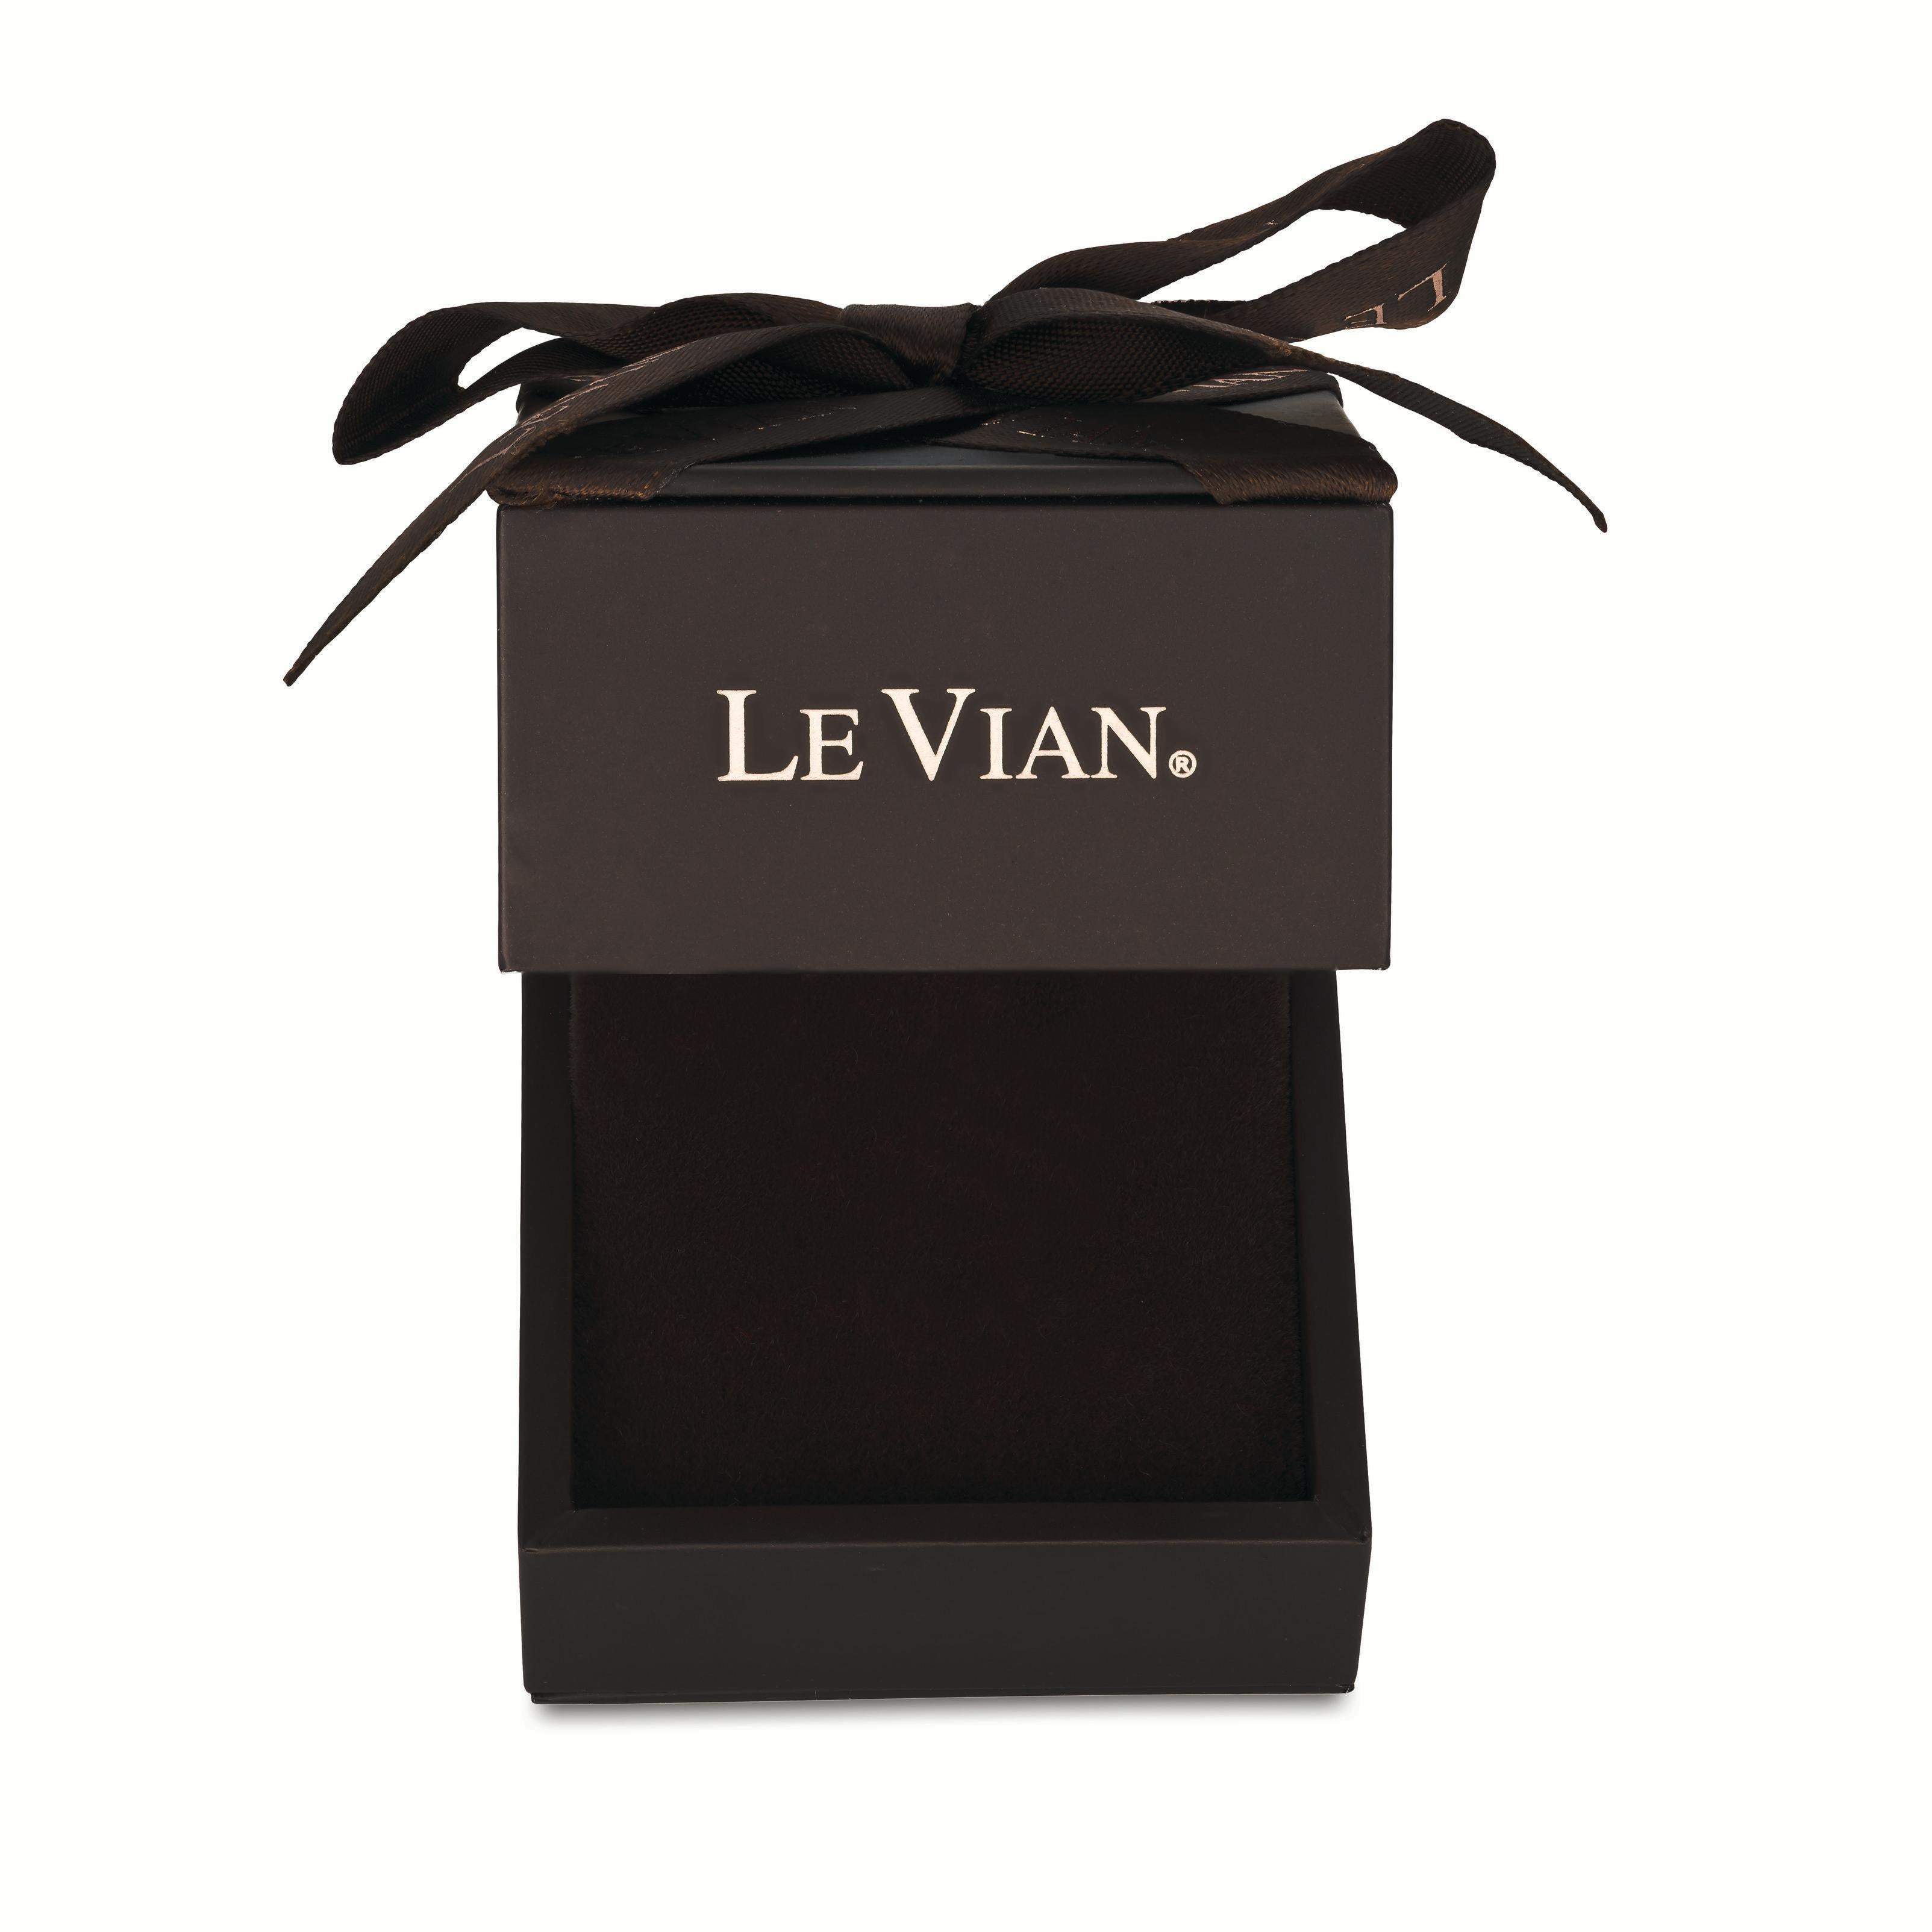 levian chocolate diamond